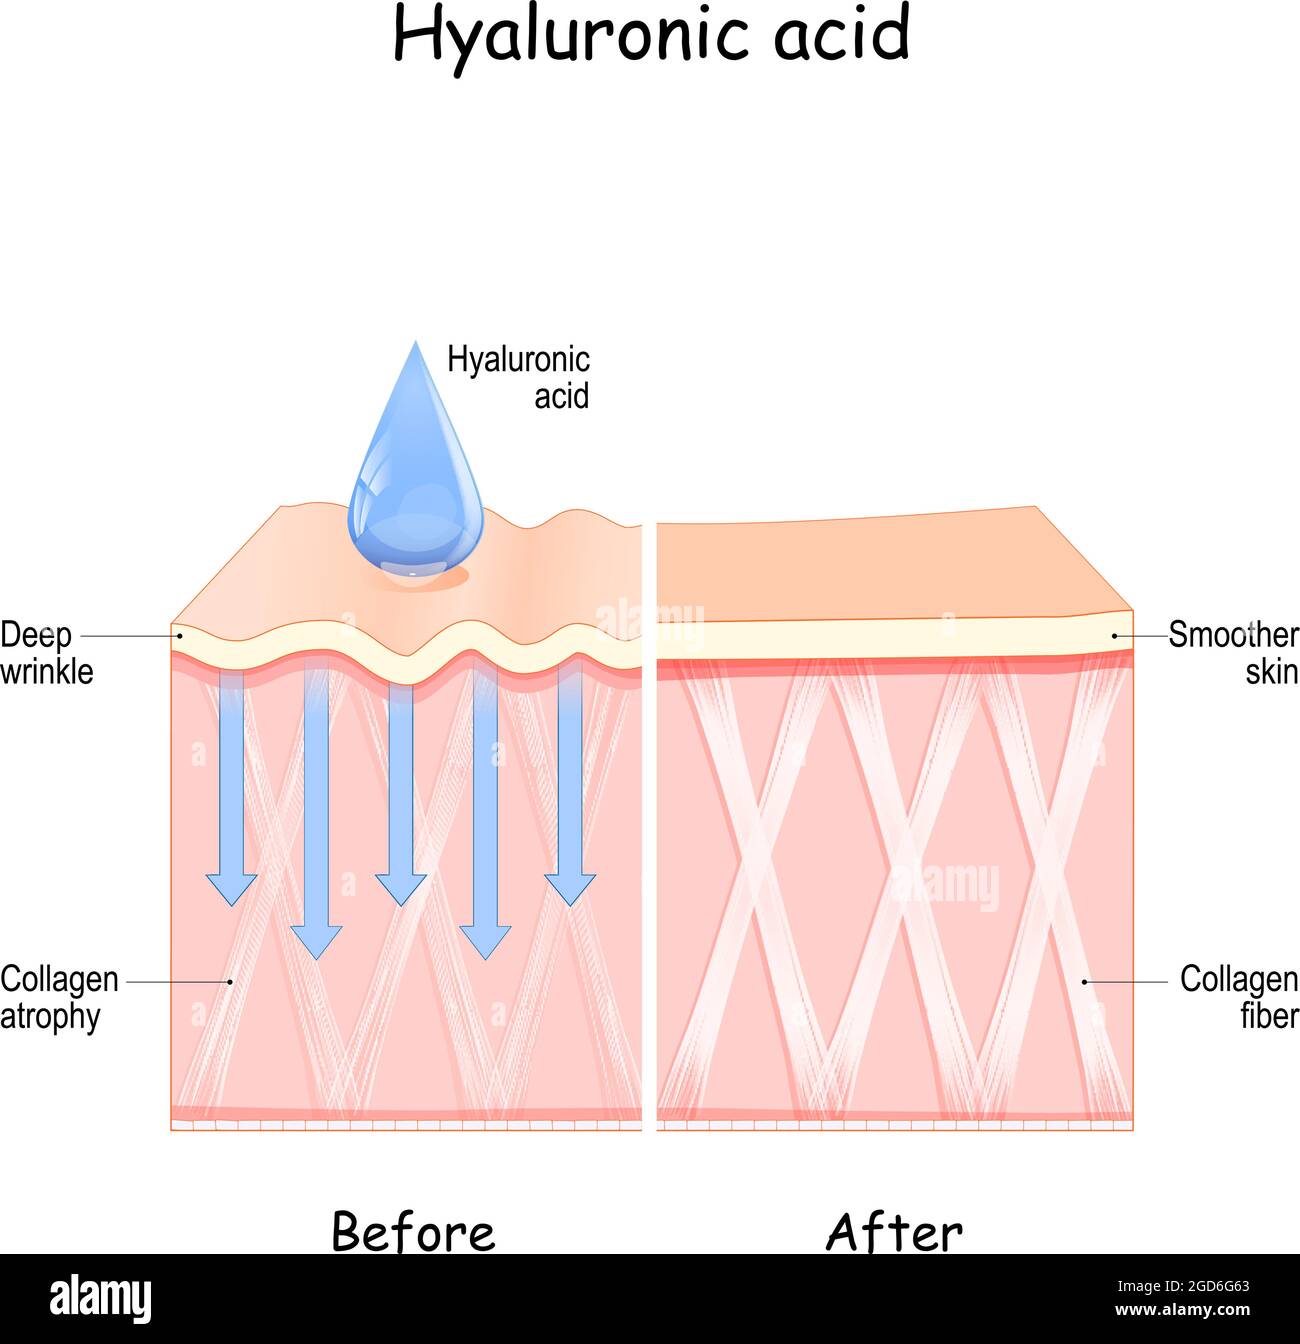 Acide hyaluronique. Peau avant et après l'utilisation de l'acide hyaluronique. Comparaison et différence entre la peau et l'atrophie du collagène Illustration de Vecteur